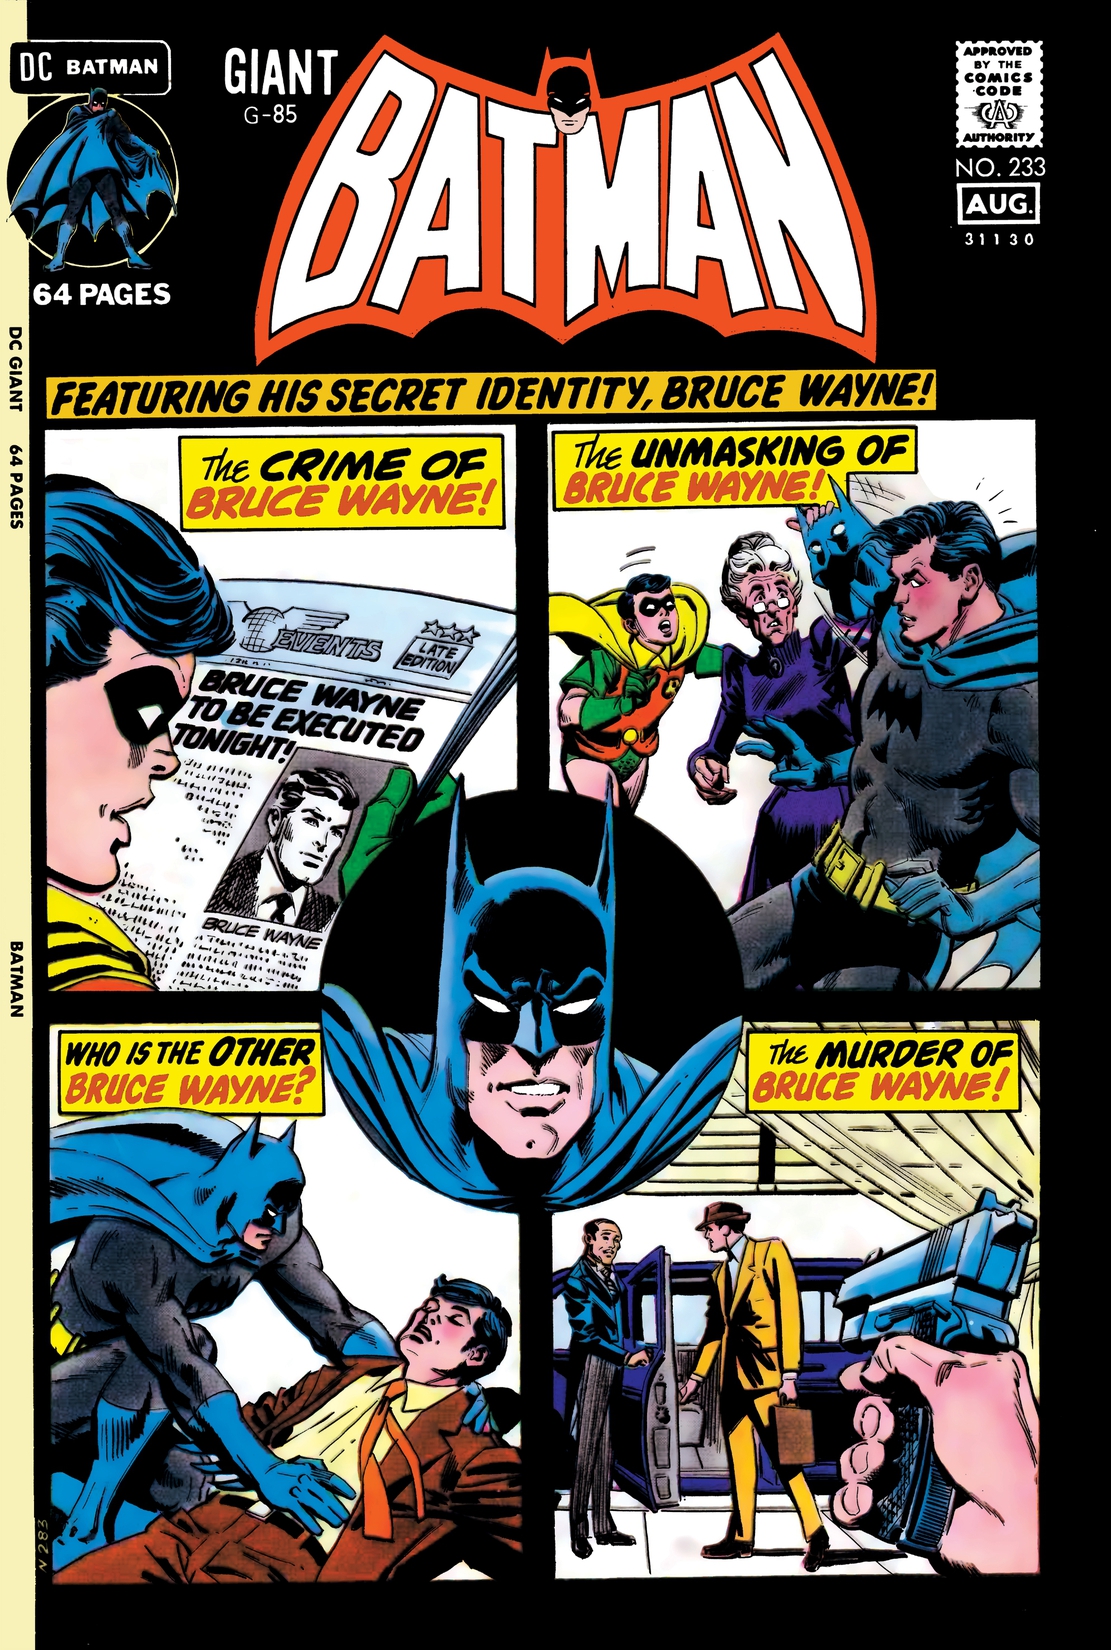 Batman (1940-) #233 preview images